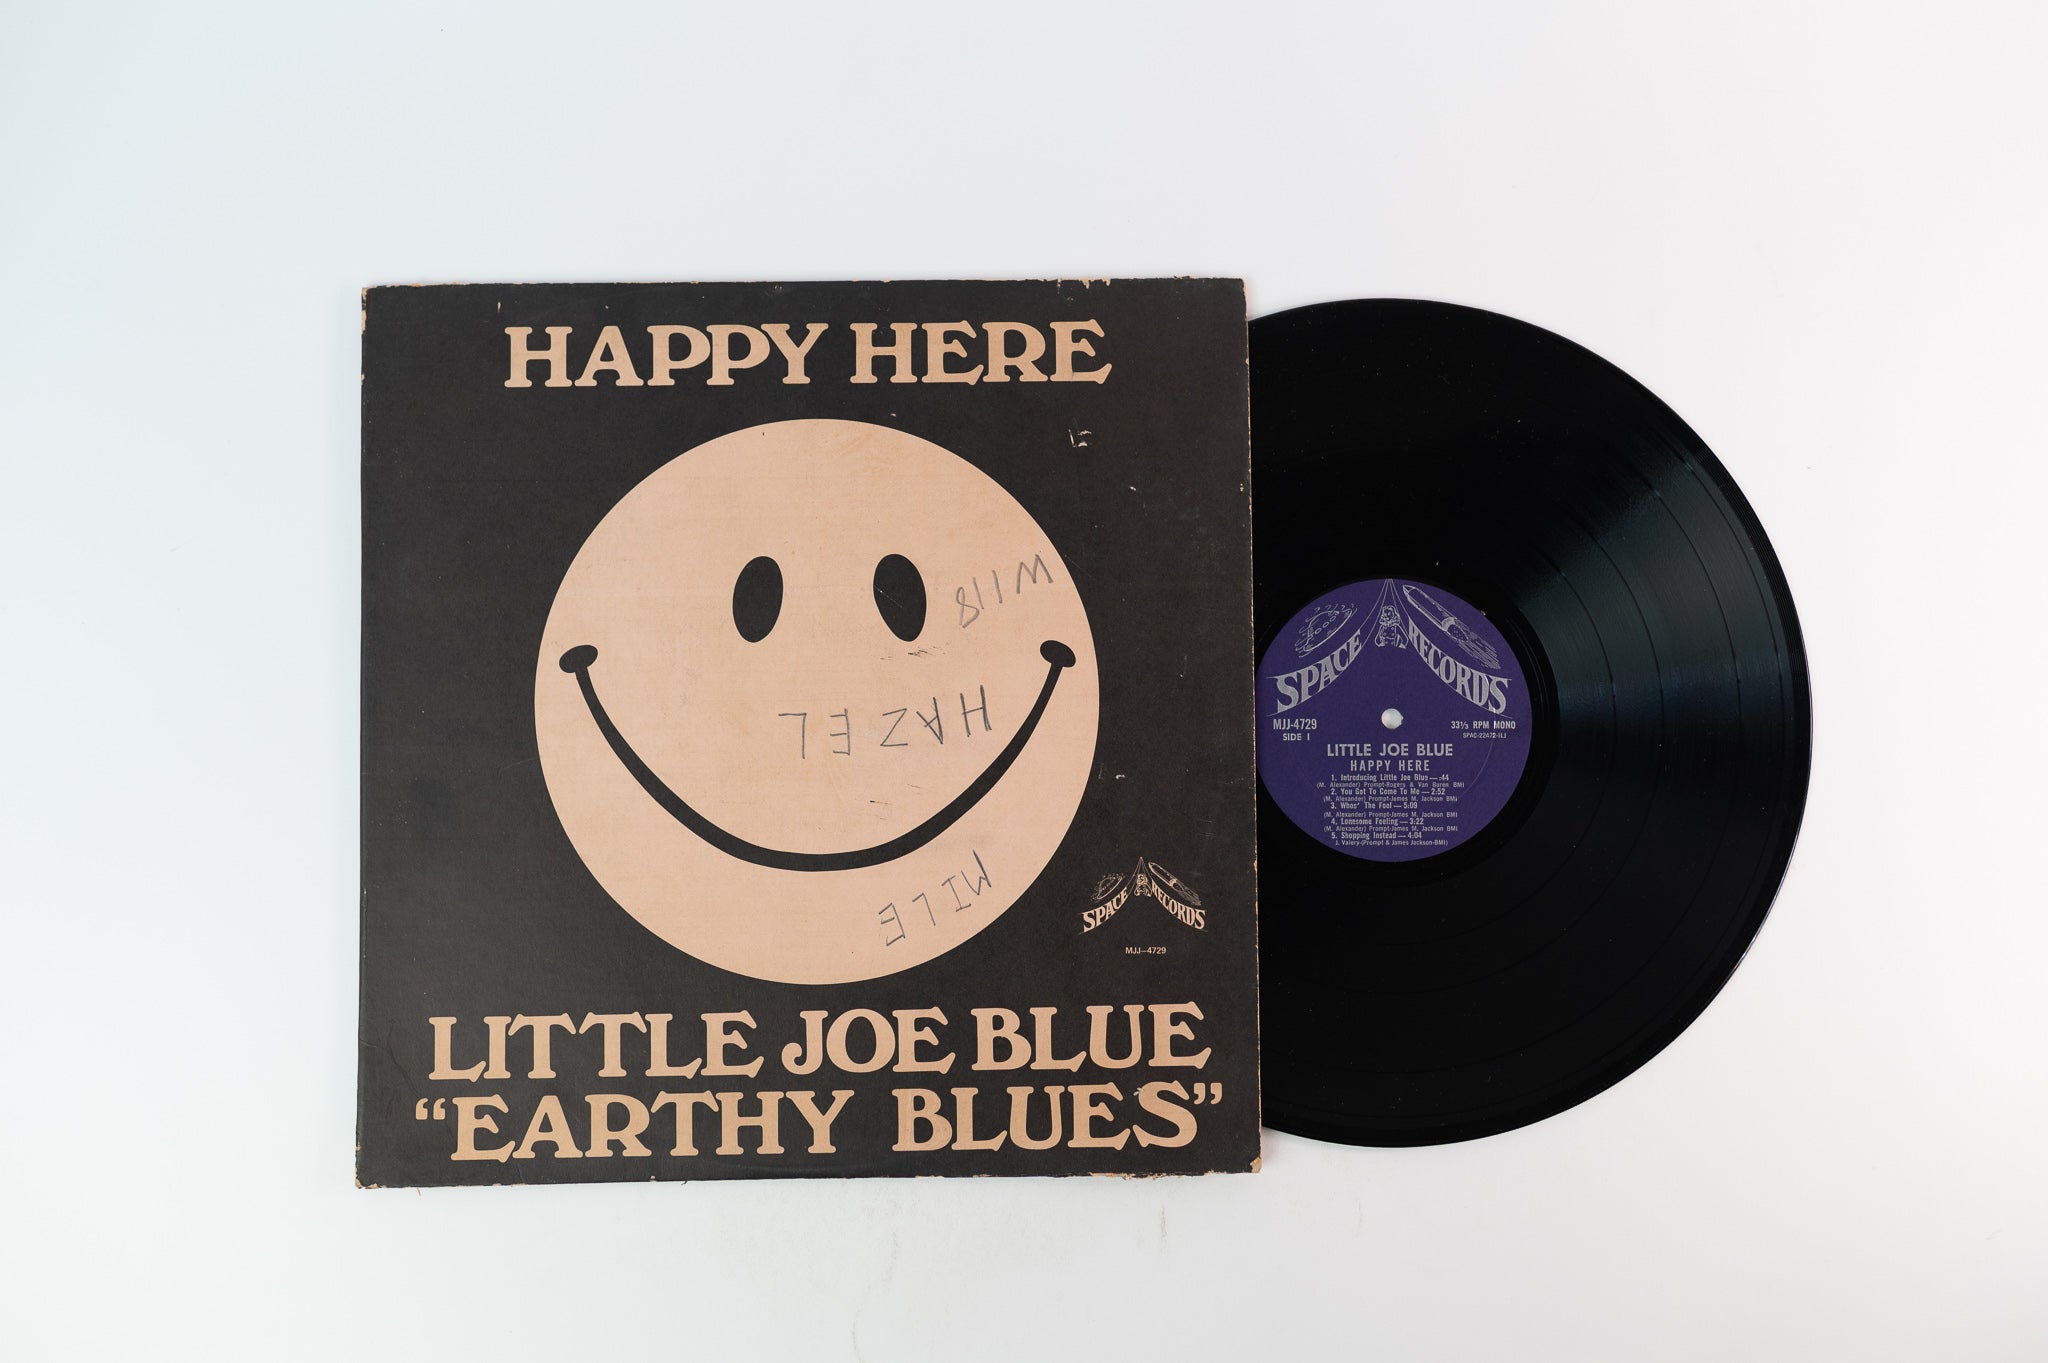 Little Joe Blue - Happy Here - "Earthy Blues" on Space